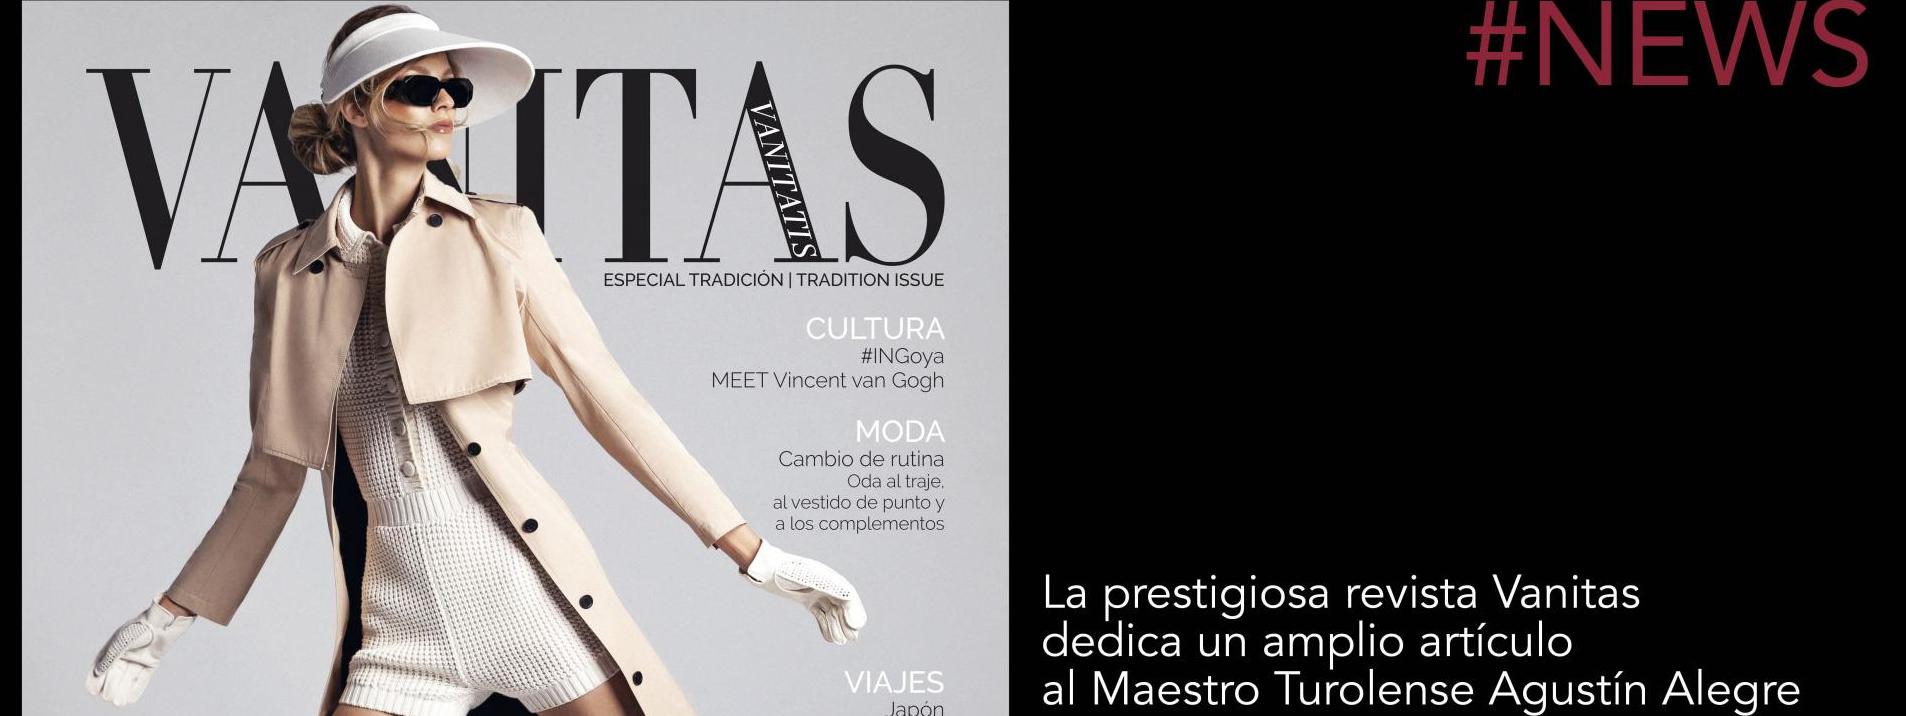 La prestigiosa revista Vanitas dedica un amplio artículo al Maestro Turolense Agustín Alegre